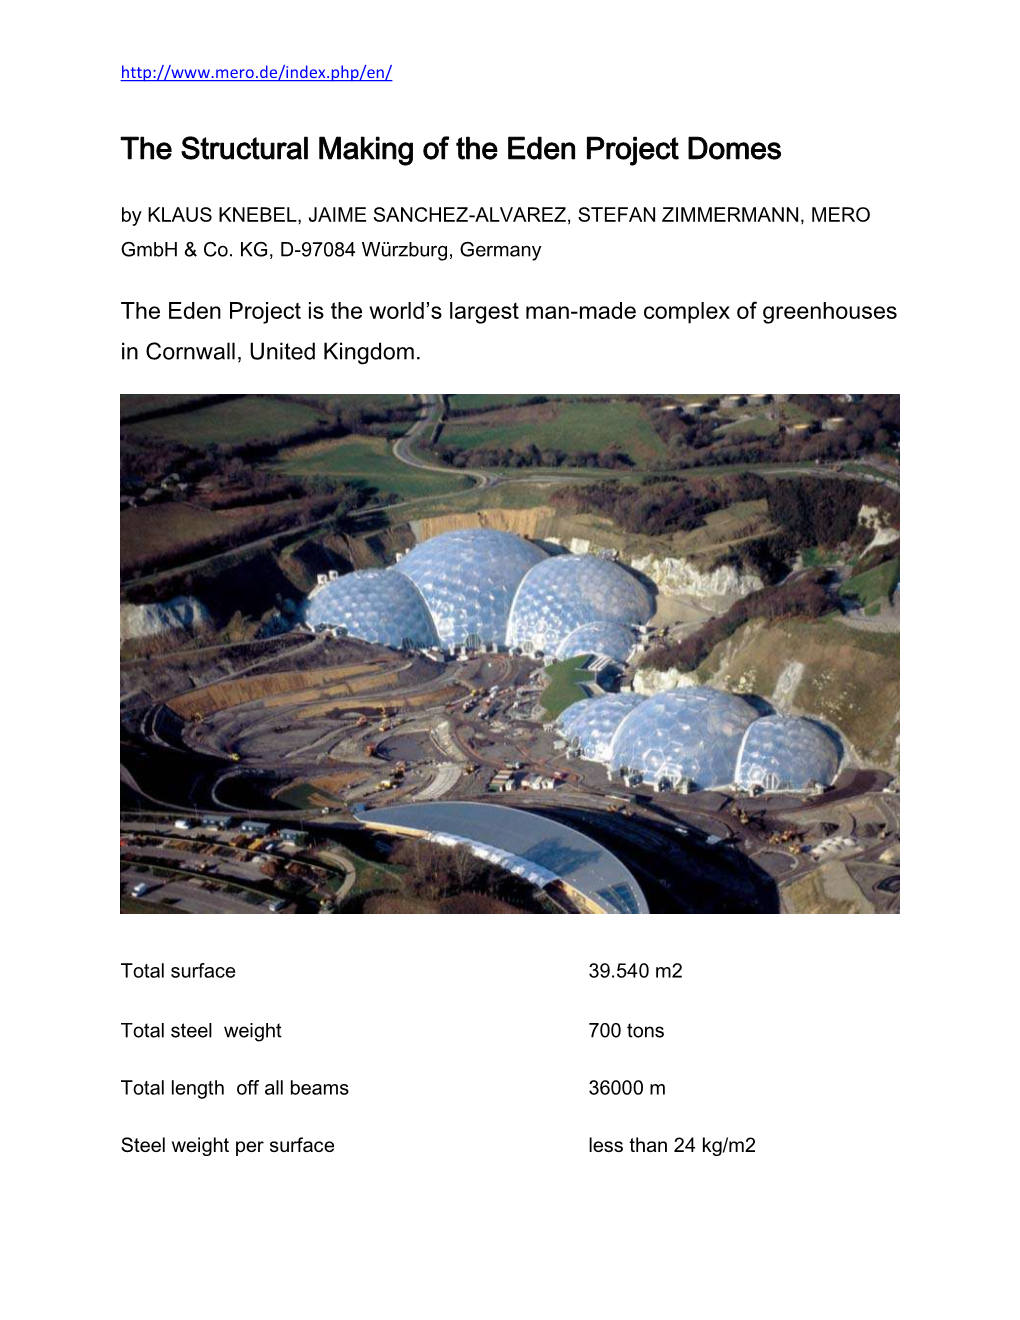 The Structural Making of the Eden Project Domes by KLAUS KNEBEL, JAIME SANCHEZ-ALVAREZ, STEFAN ZIMMERMANN, MERO Gmbh & Co